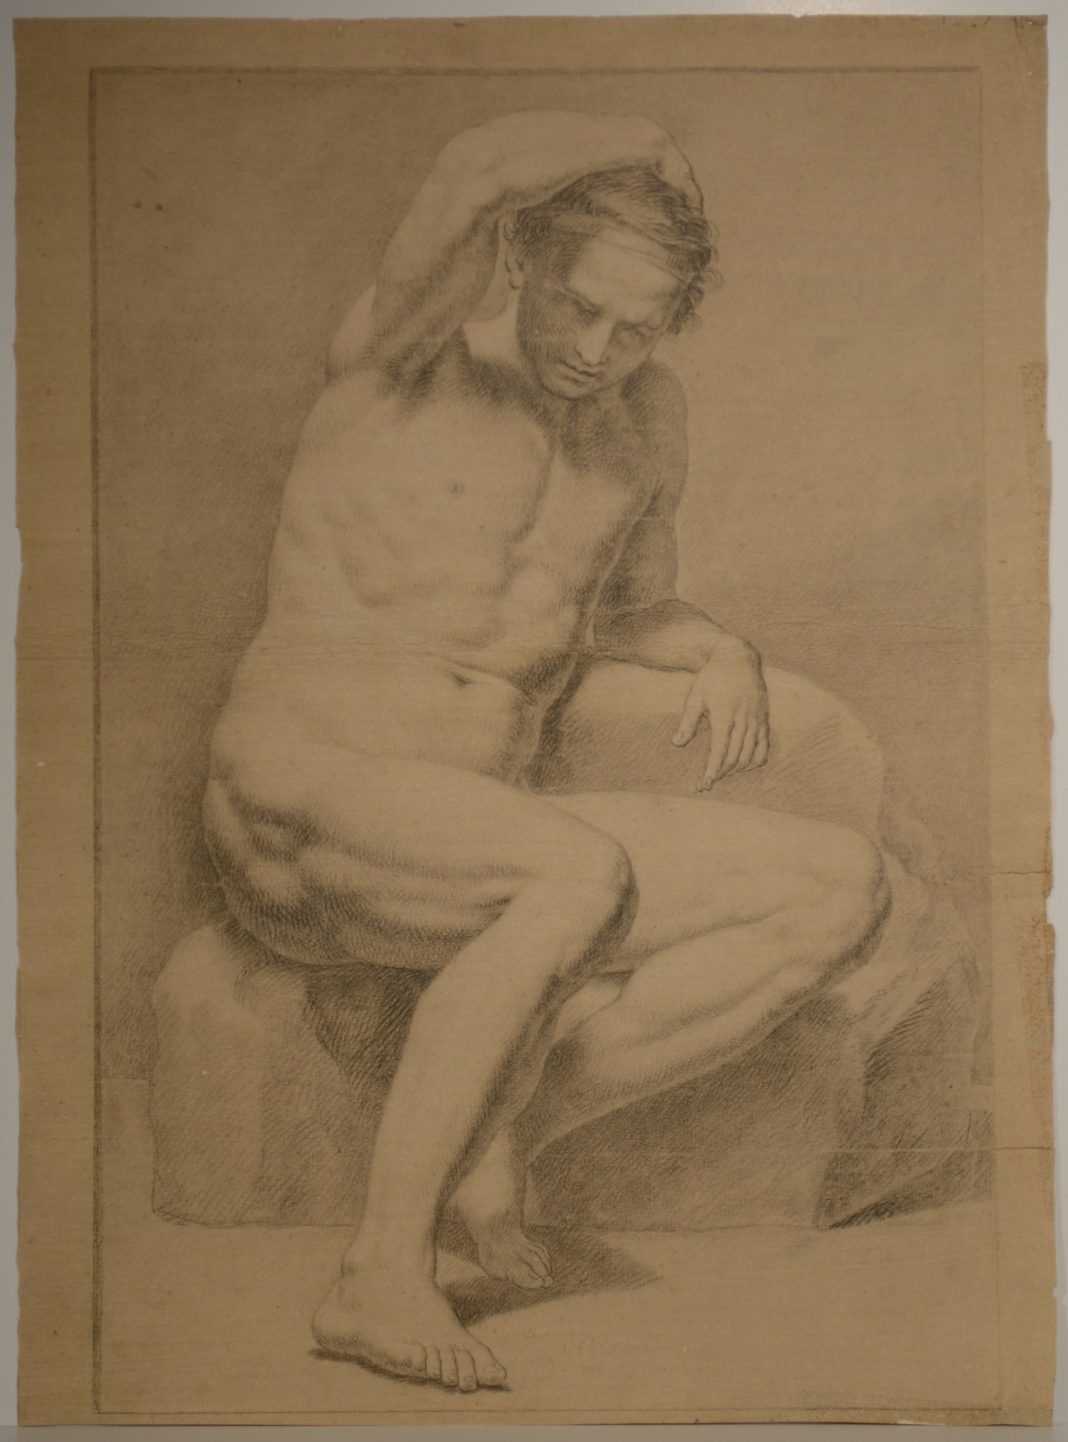 Il corpo e la sua rappresentazione. Disegni inediti di Giuseppe Bottani (1717-1784)https://www.exibart.com/repository/media/eventi/2015/02/il-corpo-e-la-sua-rappresentazione.-disegni-inediti-di-giuseppe-bottani-1717-1784-1068x1442.jpg